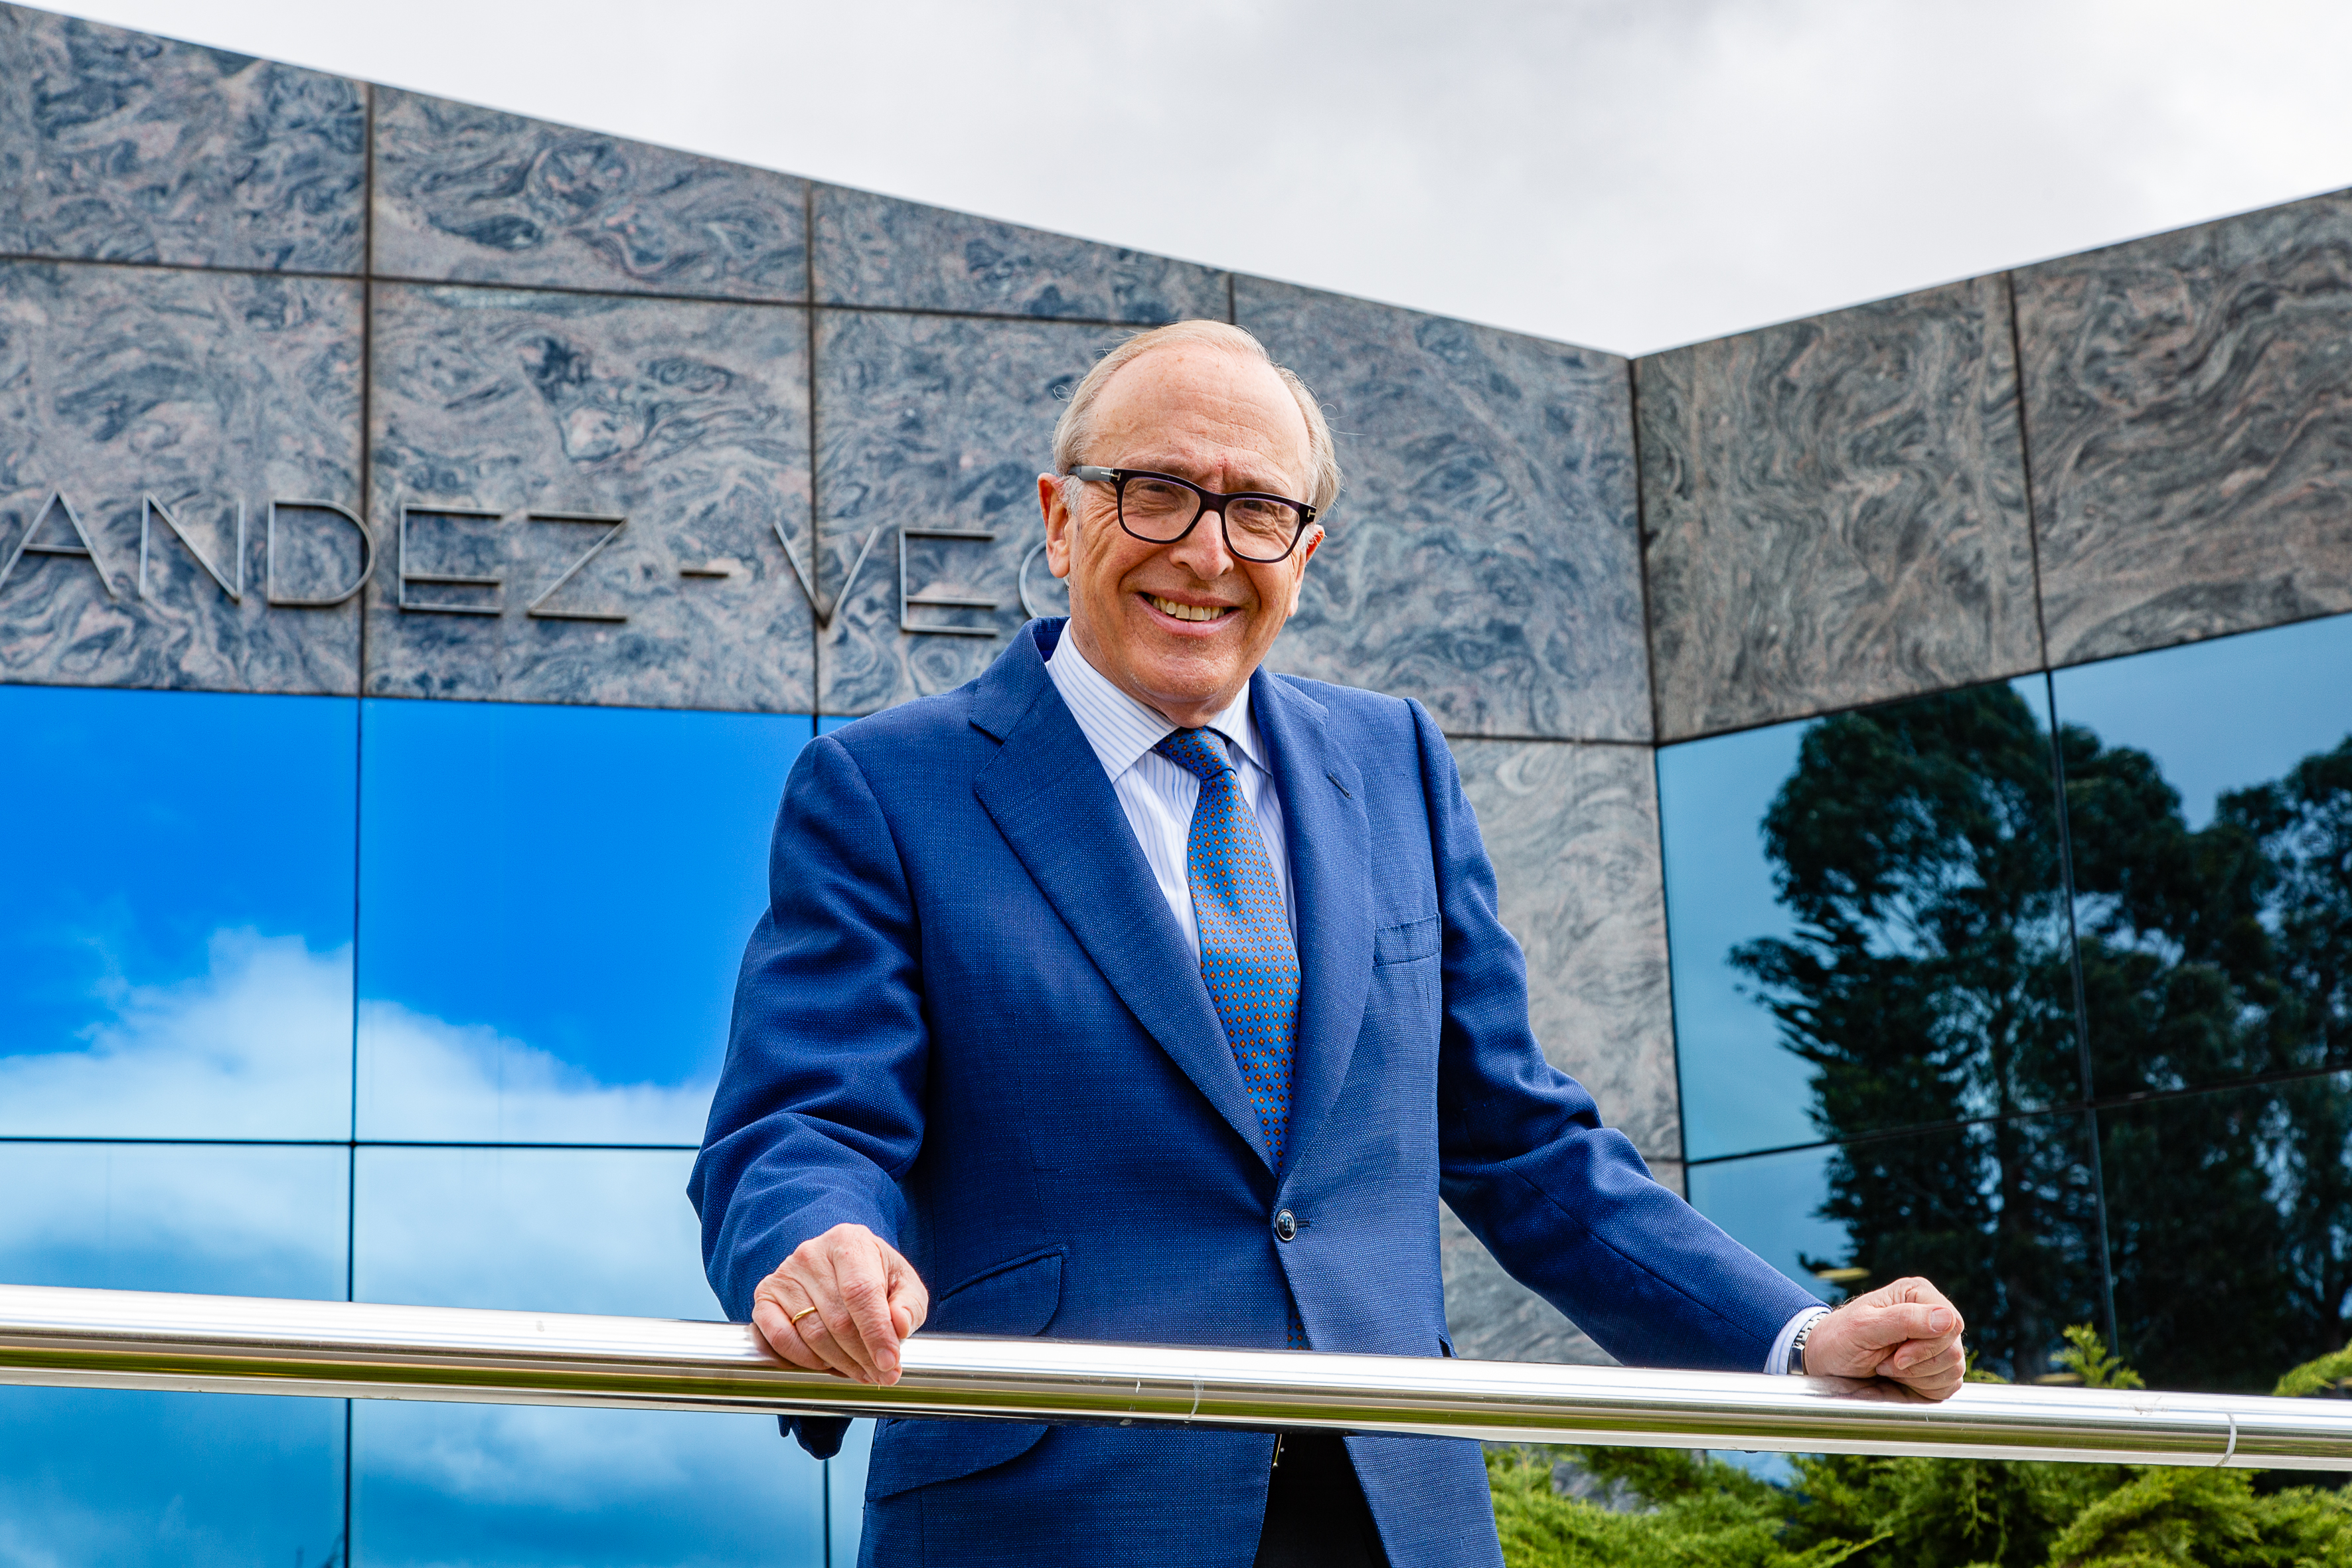 El presidente del Instituto Oftalmológico Fernández-Vega, Pyme del año 2022, destaca la investigación y la innovación como los pilares de esta empresa familiar 